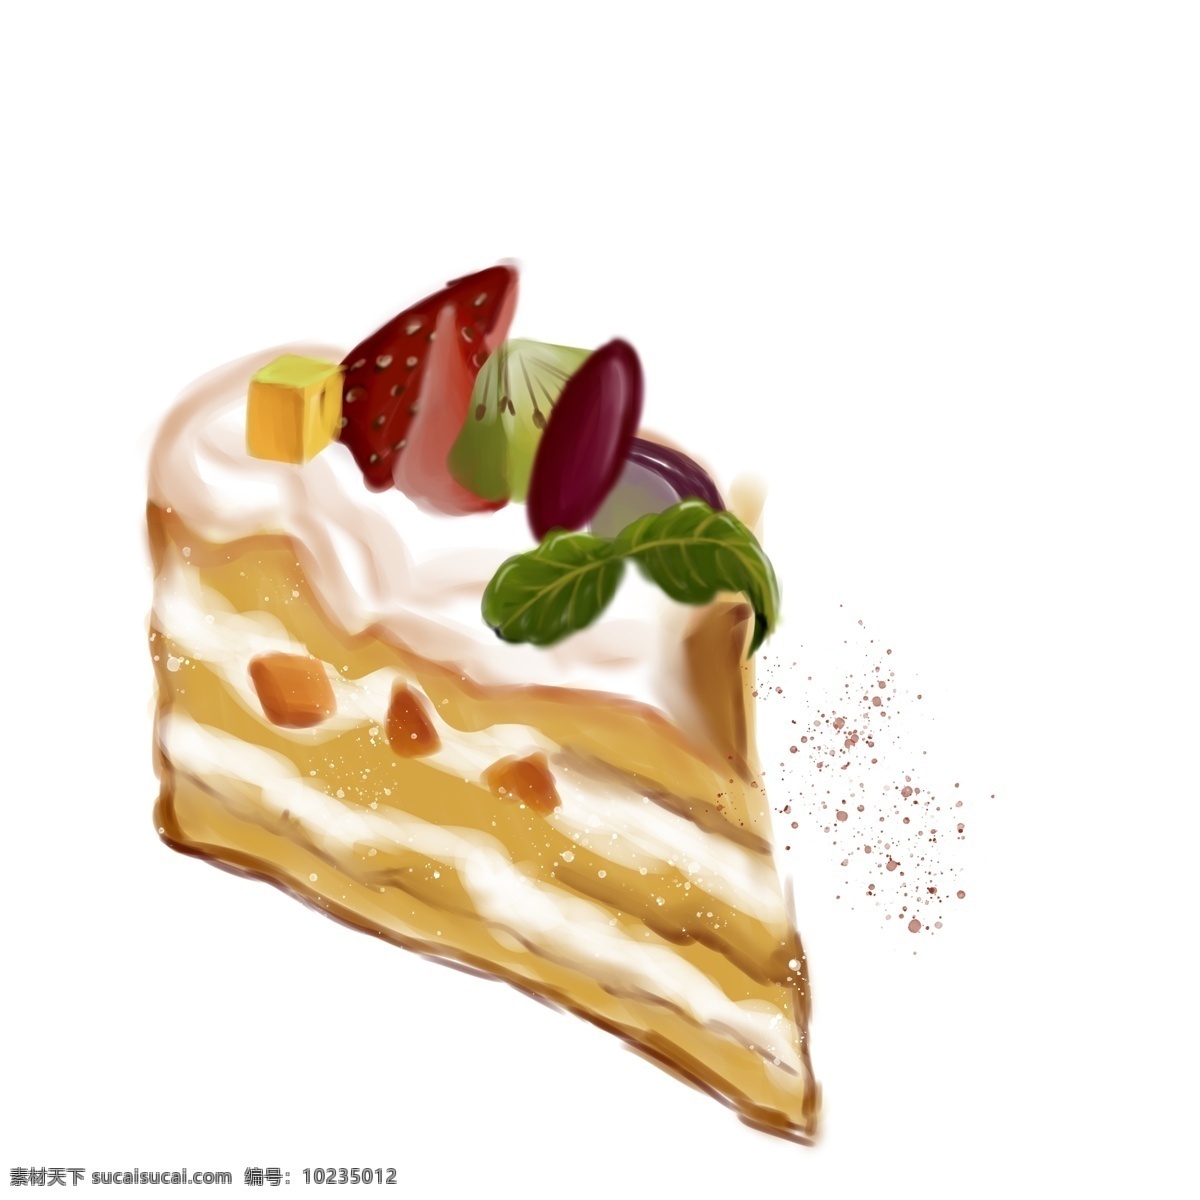 美味 一块 小 蛋糕 手绘 卡通 美食 食物 插画 小蛋糕 一块蛋糕 甜点元素